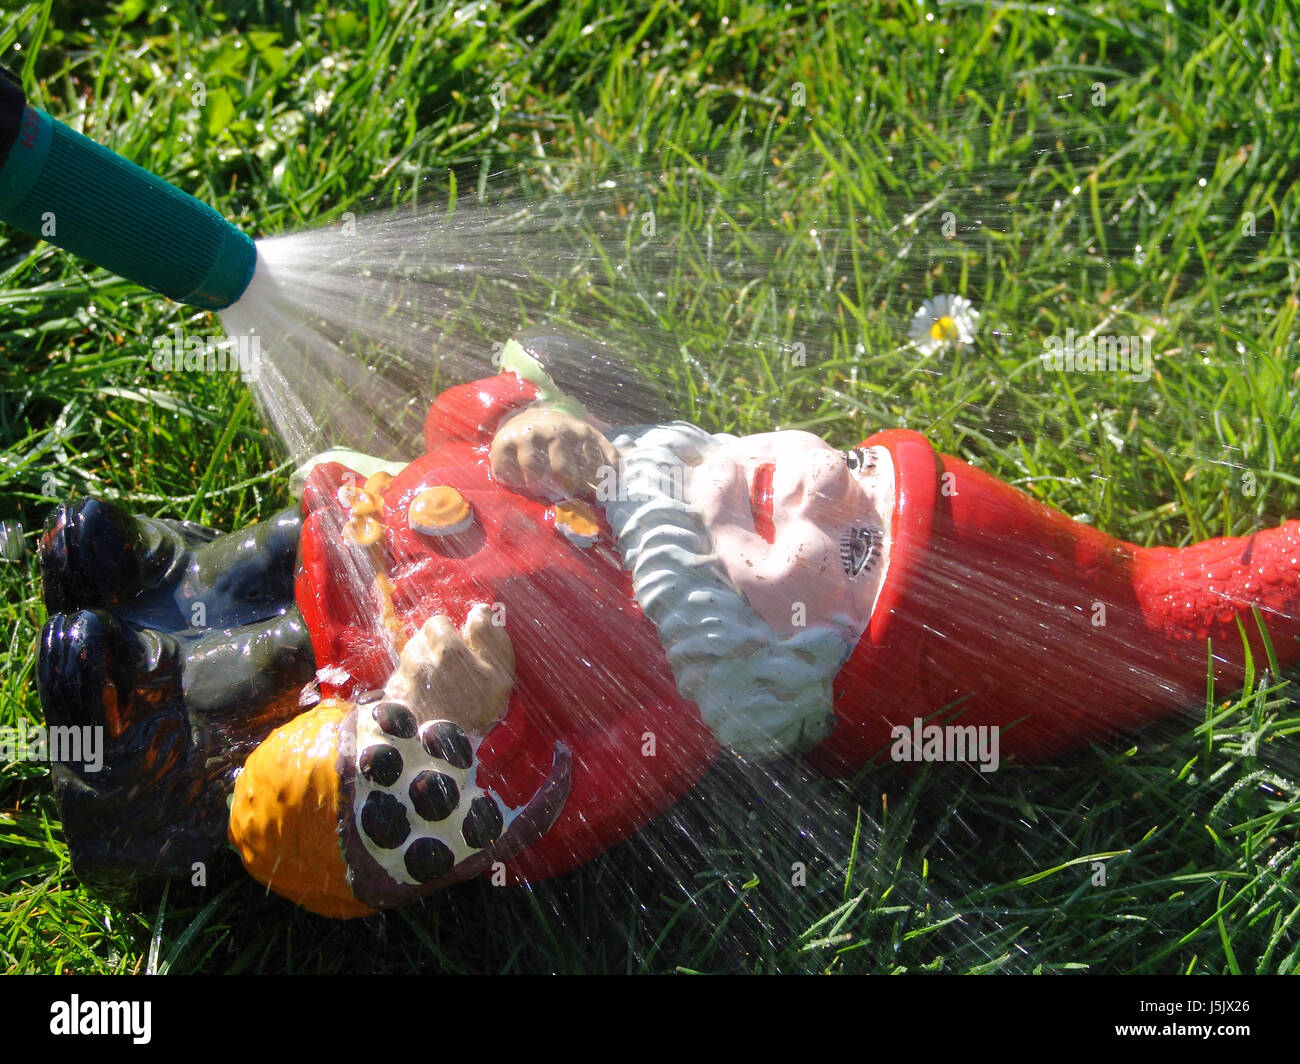 Reinigen Sie waschen waschen Zwerg Schlauch Garten Gnome Gnome zu spülen Reinigen abkühlen Stockfoto